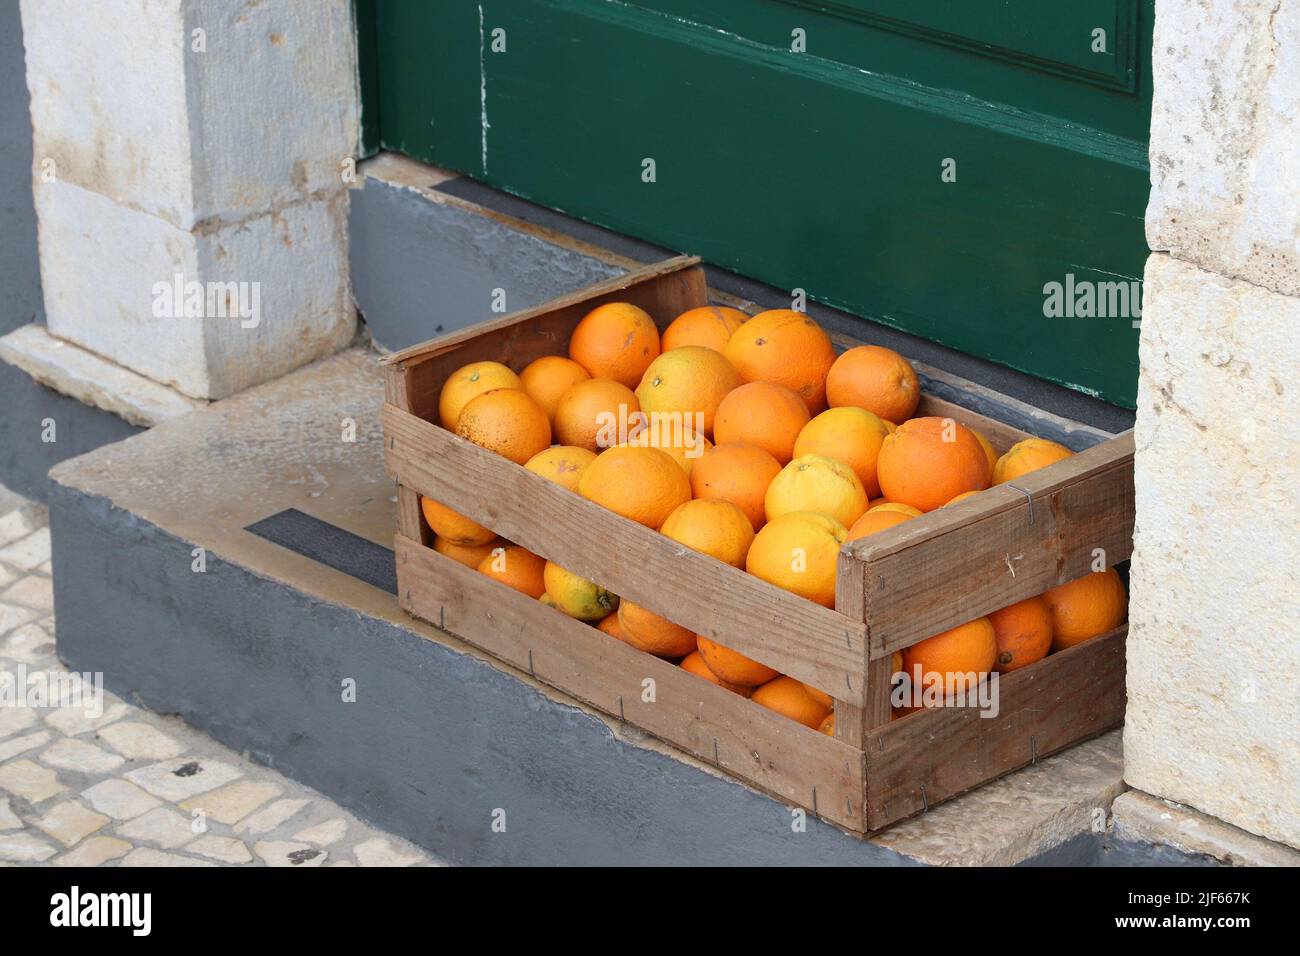 Boîte d'oranges fraîches à Faro, région de l'Algarve, Portugal. Fruits portugais. Banque D'Images